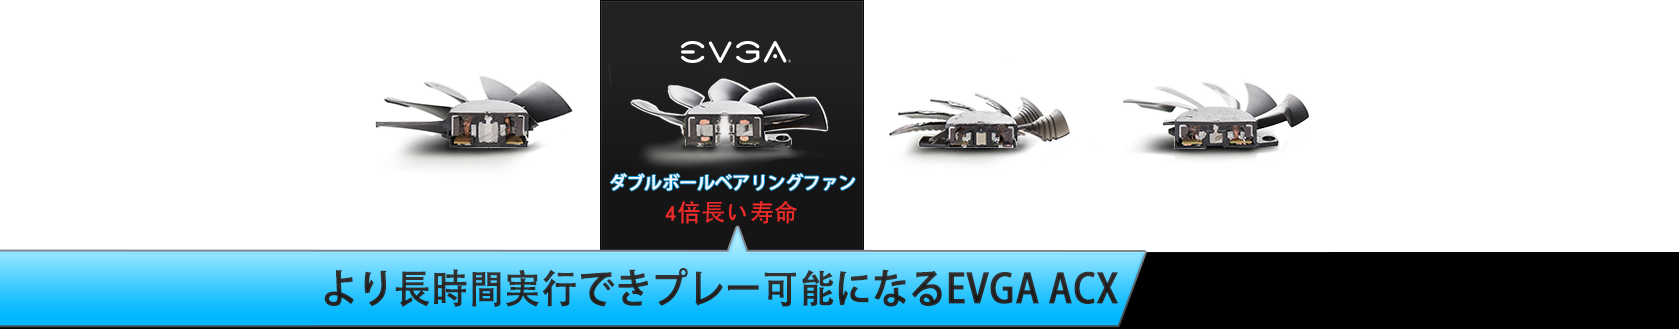 より長時間実行できプレー可能になるEVGA ACX 3.0